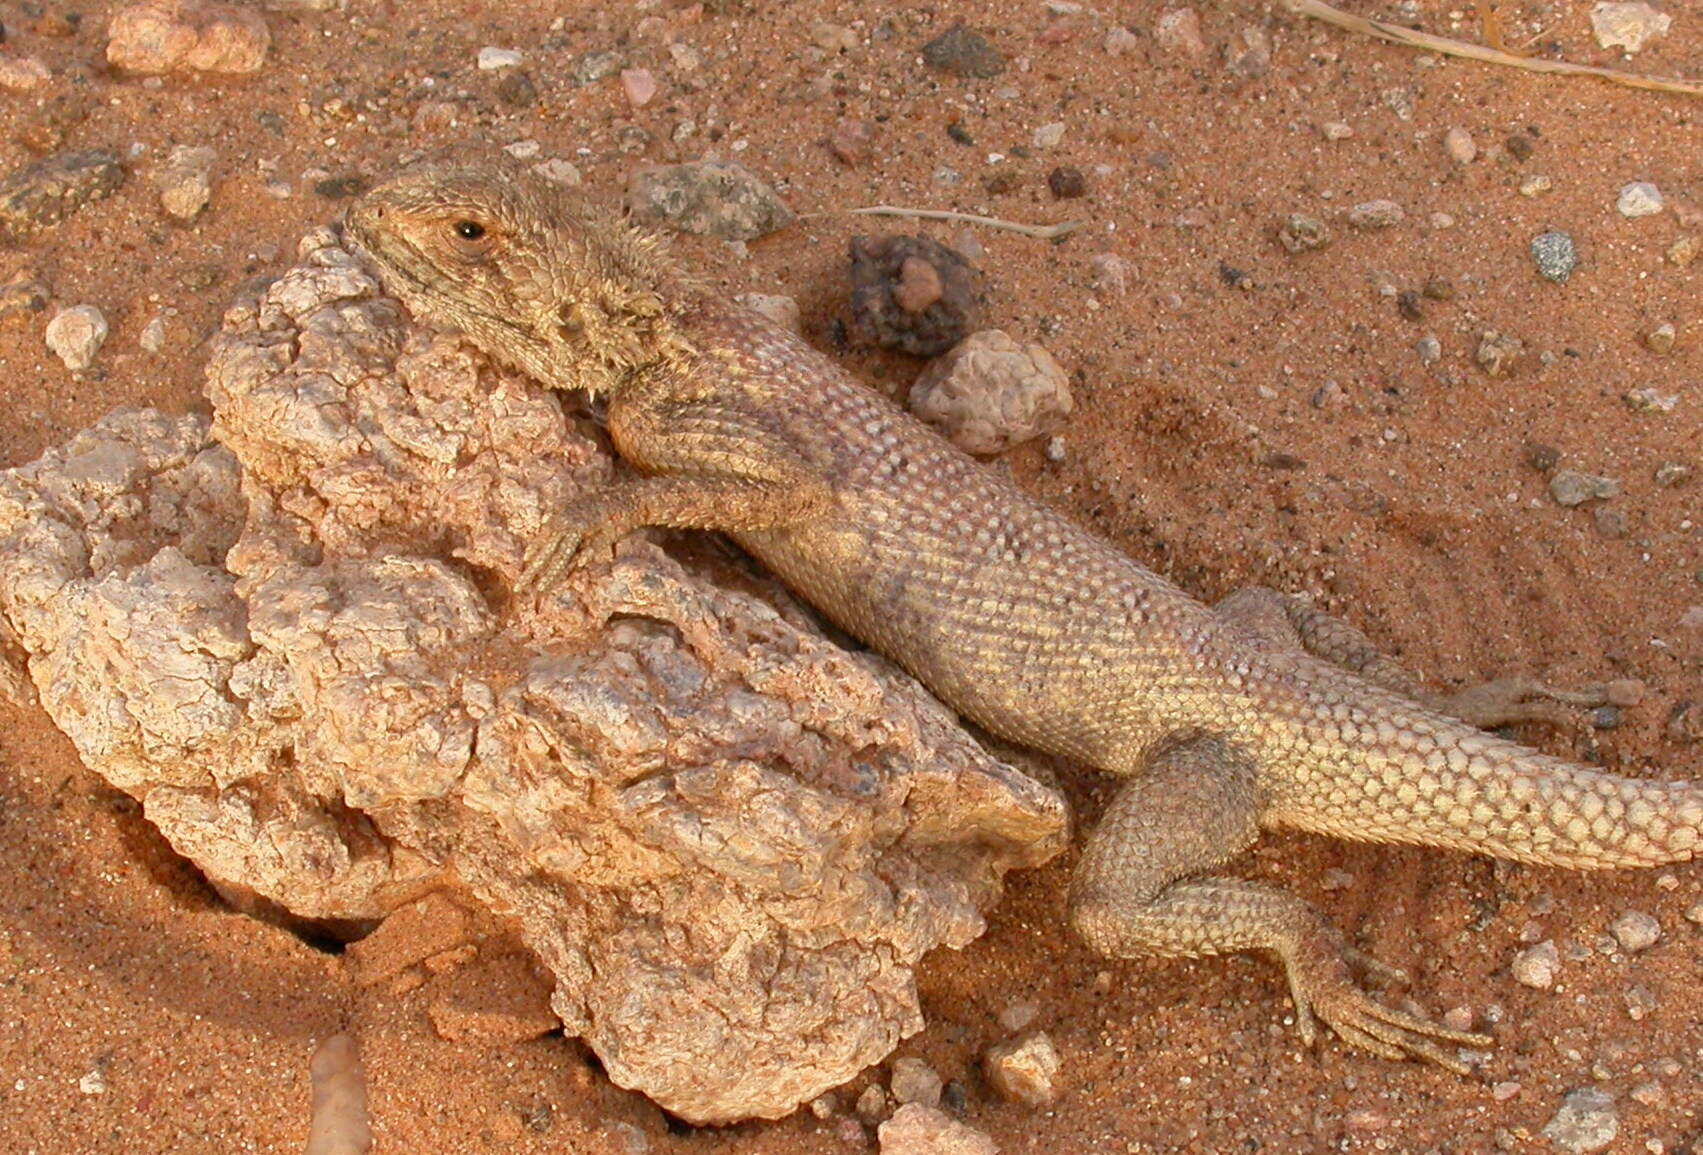 Image of Mali Agama